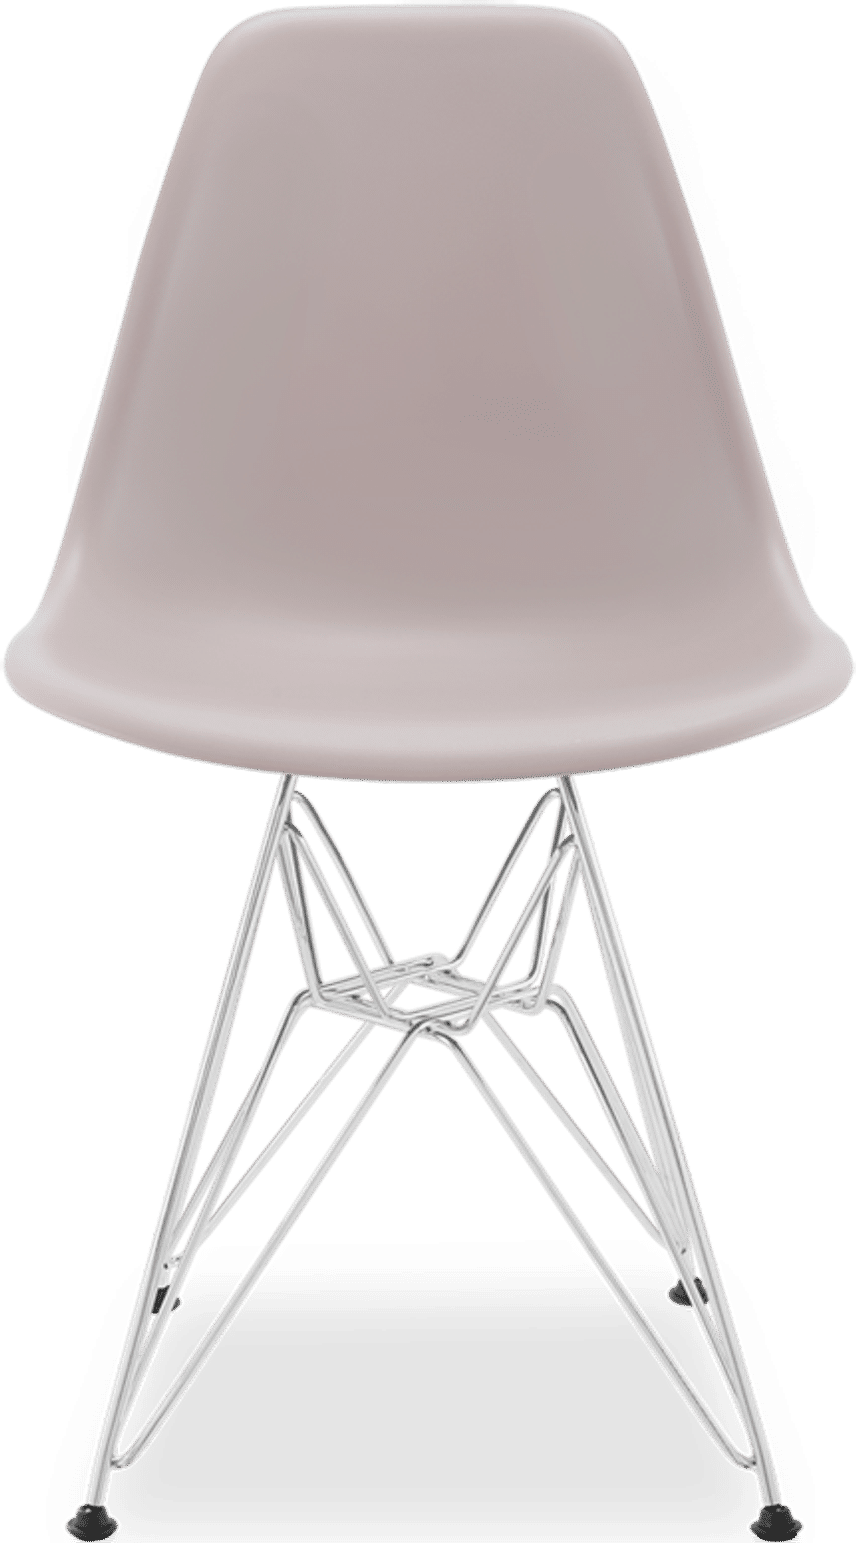 DSR Style Chair Mauve image.